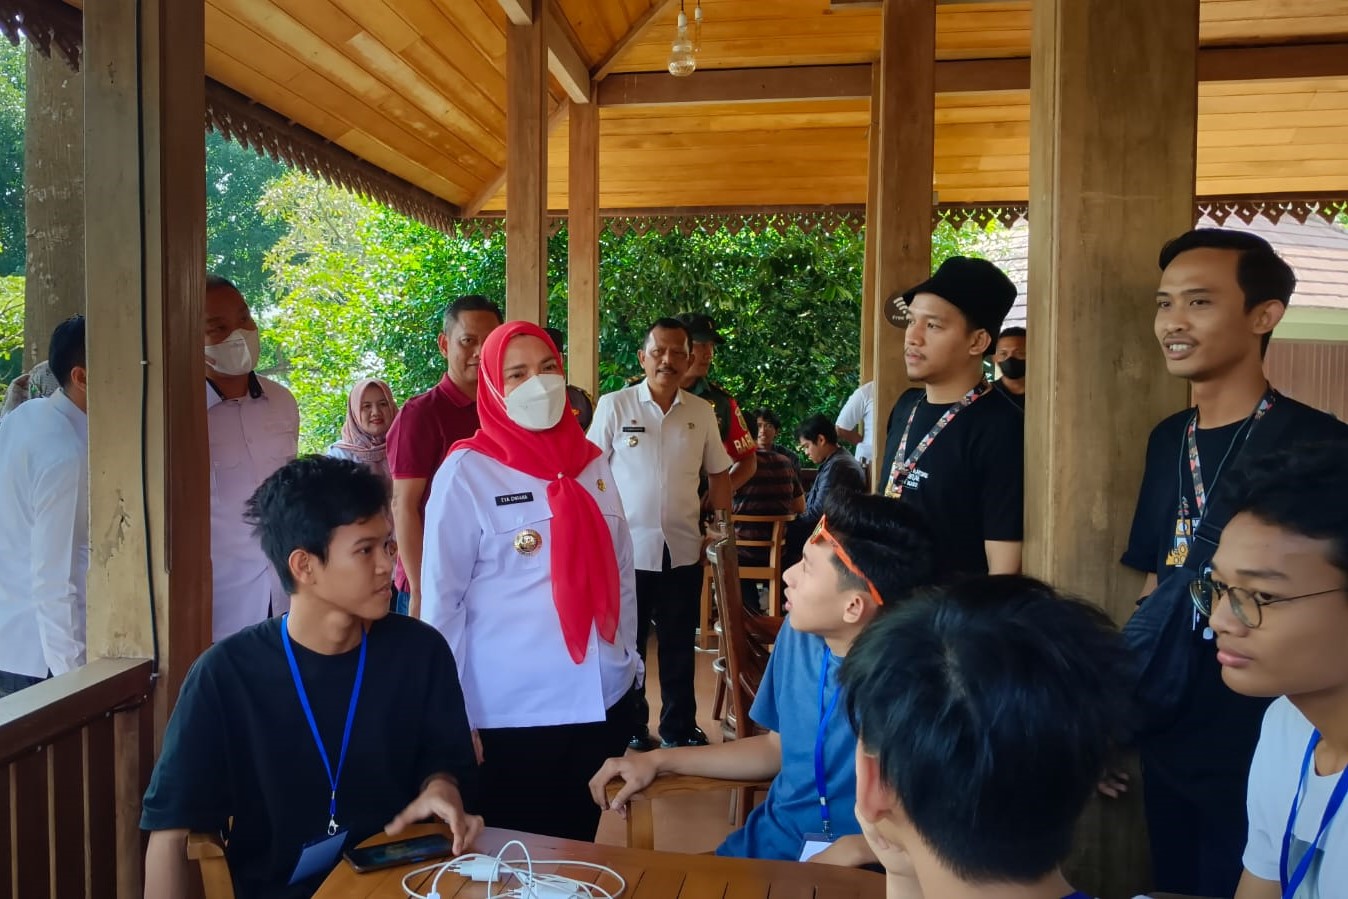 Rangkain HUT Kota Bandar Lampung, Pemkot Bersama FKML Gelar Turnamen Mobile Legend